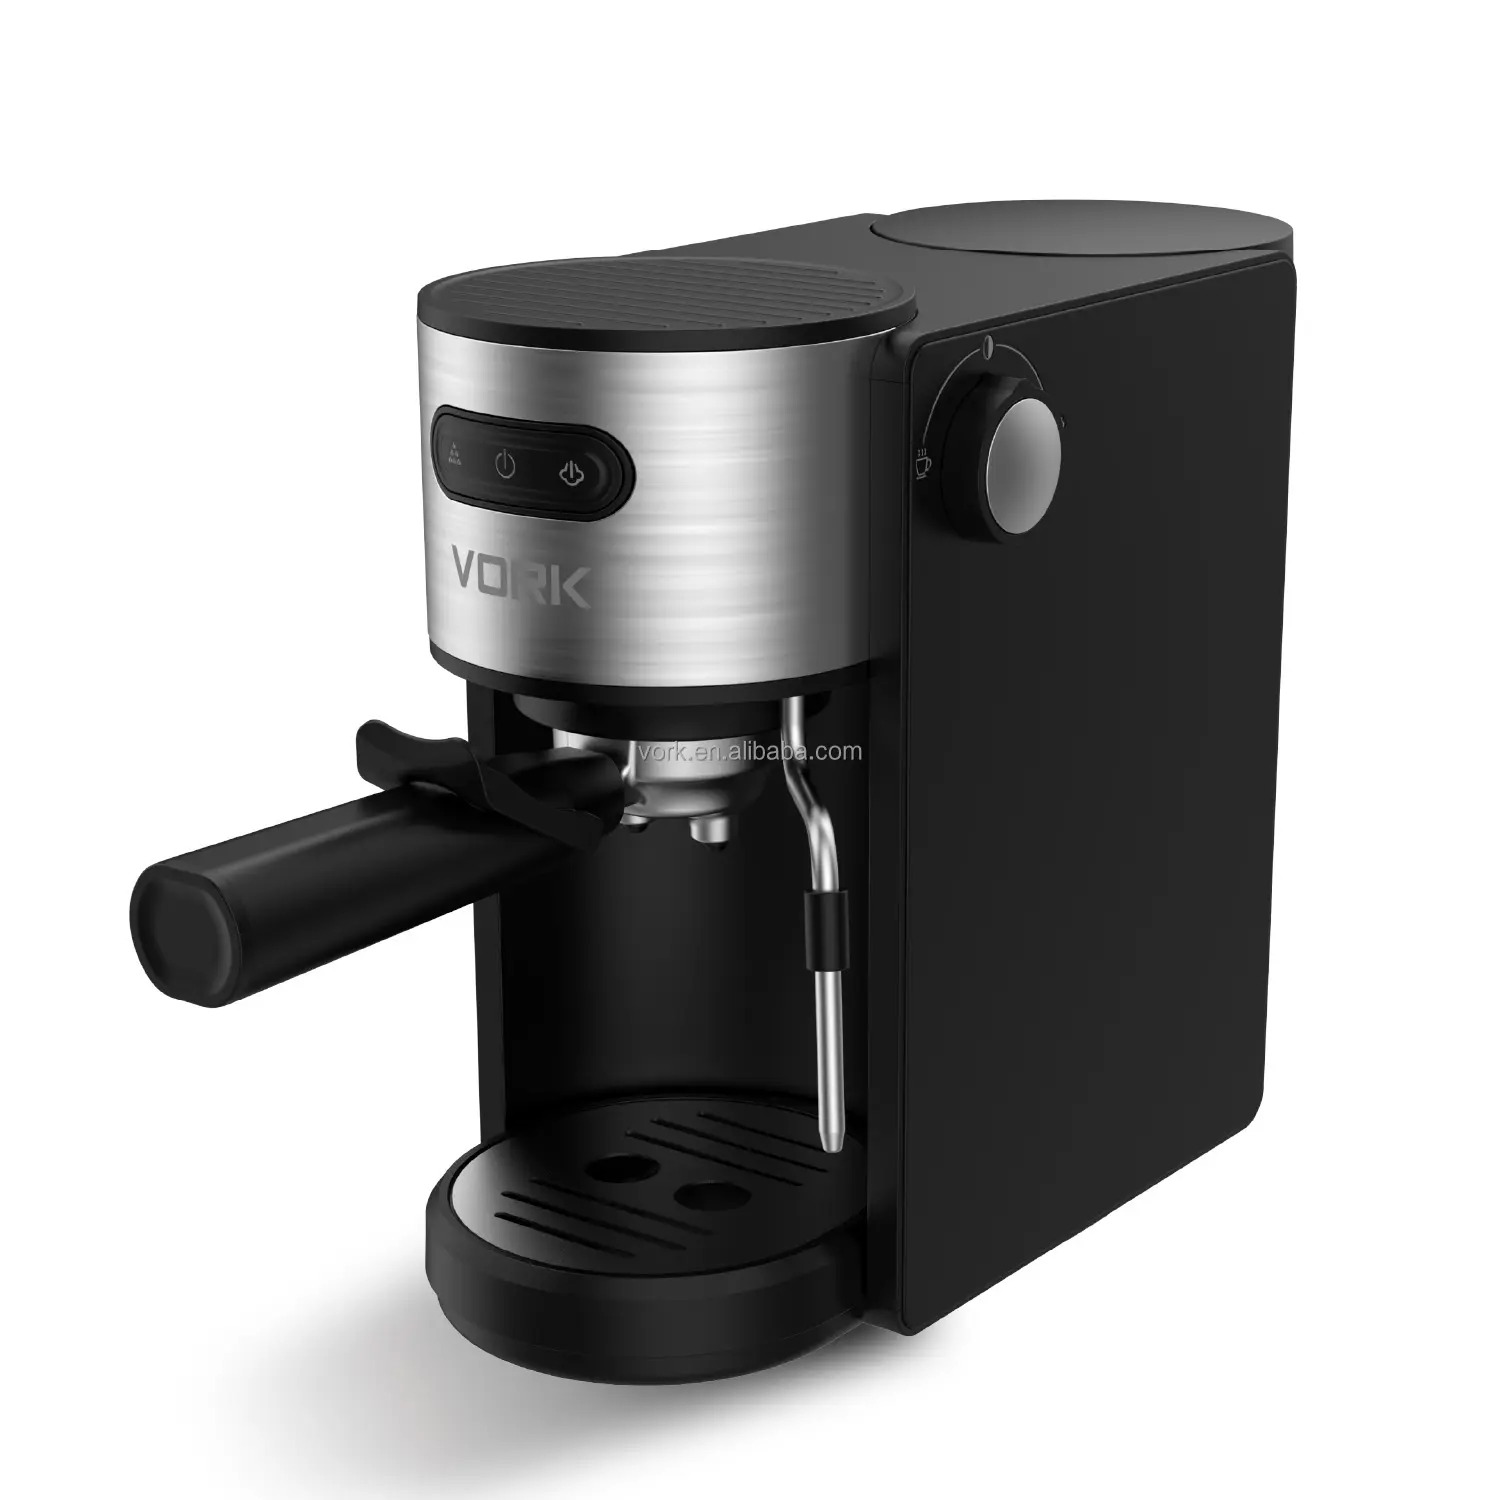 ماكينة توفر الخدمة الذاتية طوال 24 ساعة لتحضير القهوة الساخنة أو المثلجة أو الطازجة